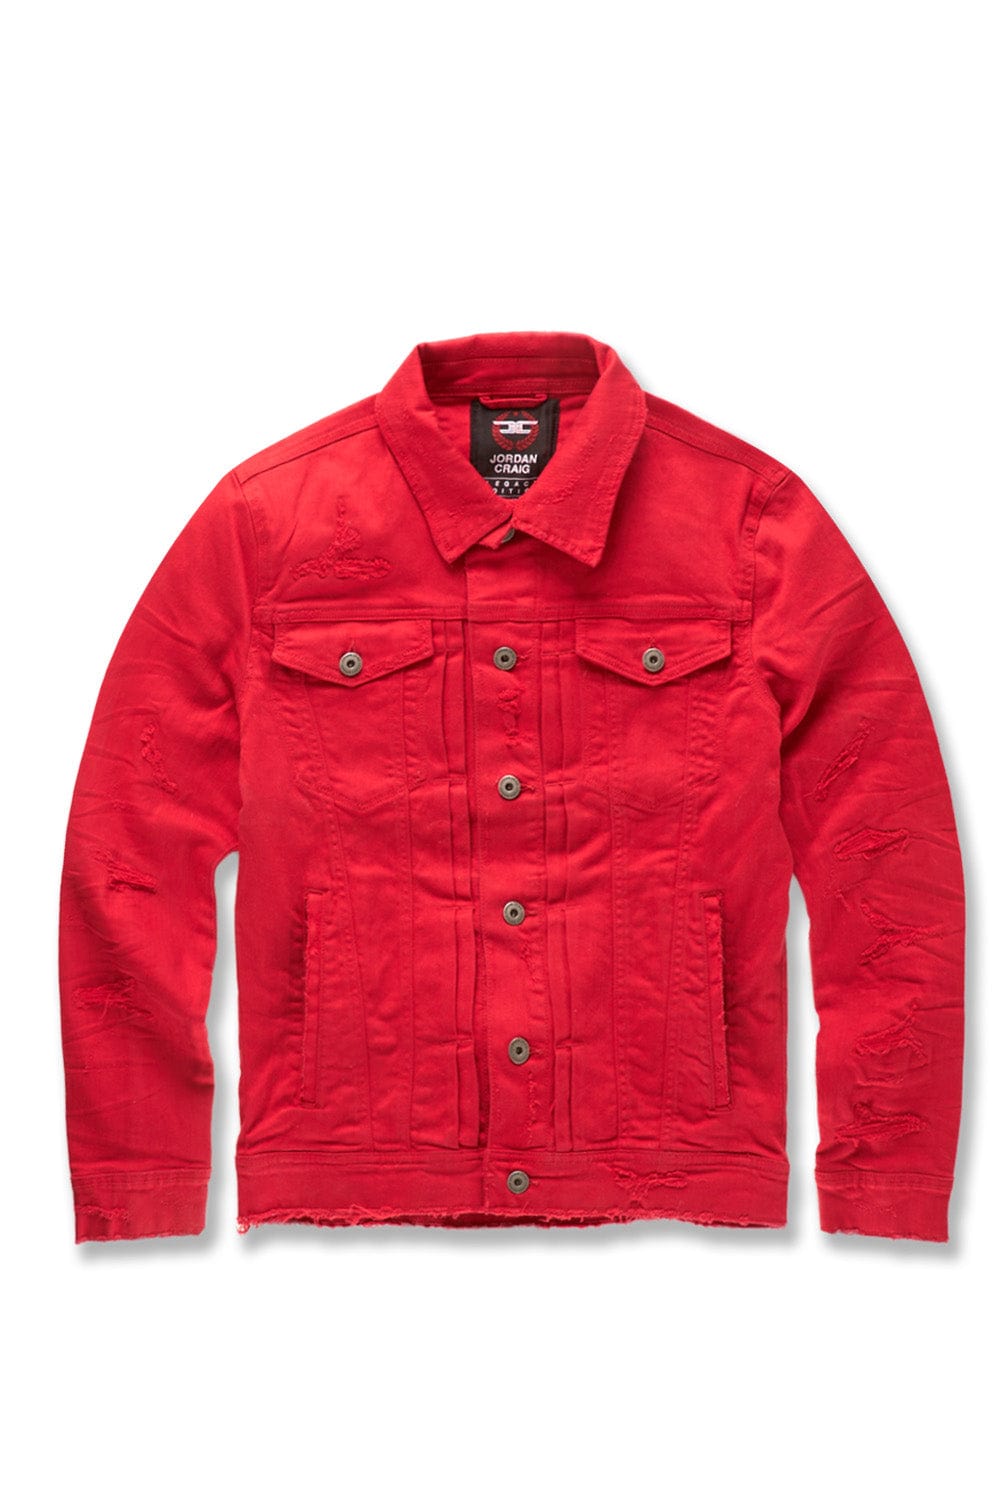 Jordan Craig Tribeca Twill Trucker Jacket (Core Colors) Red / S